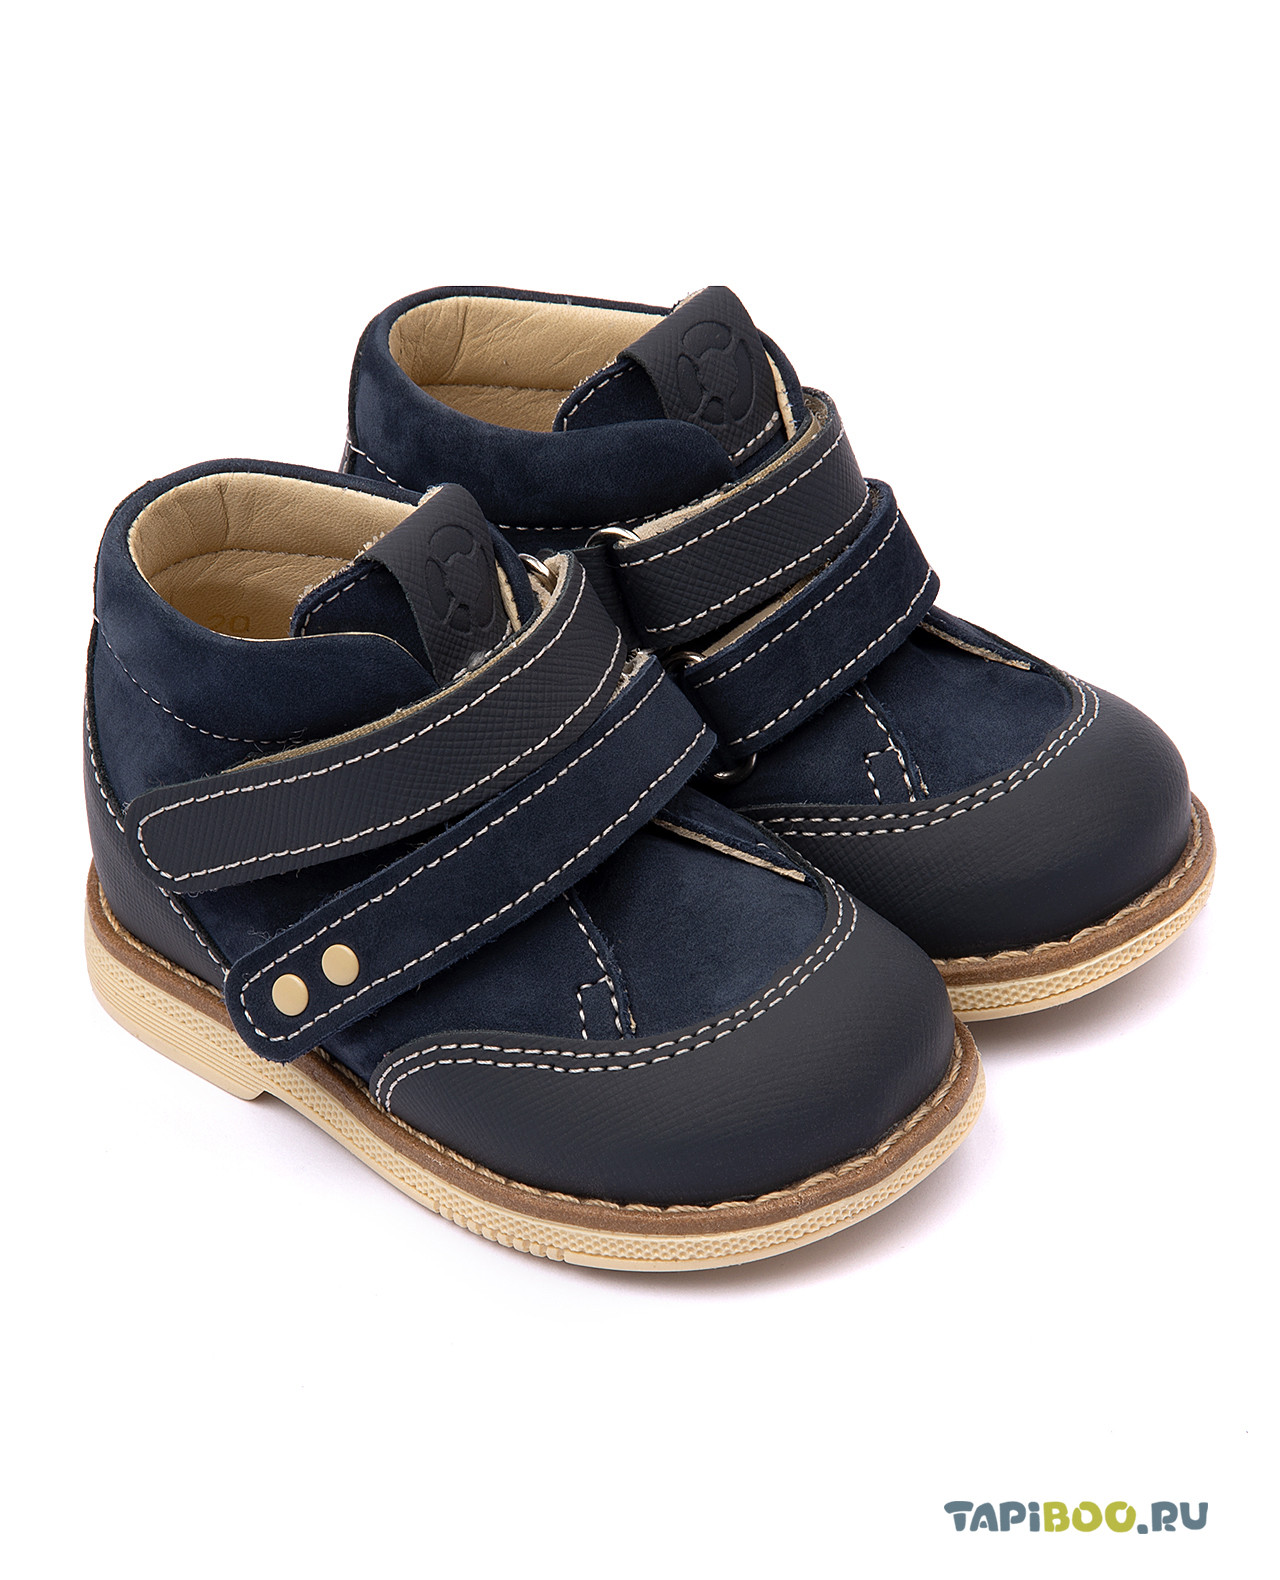 Ботинки детские Tapiboo ИРИС (72898, 23) ботинки детские tapiboo исландия 78458 20